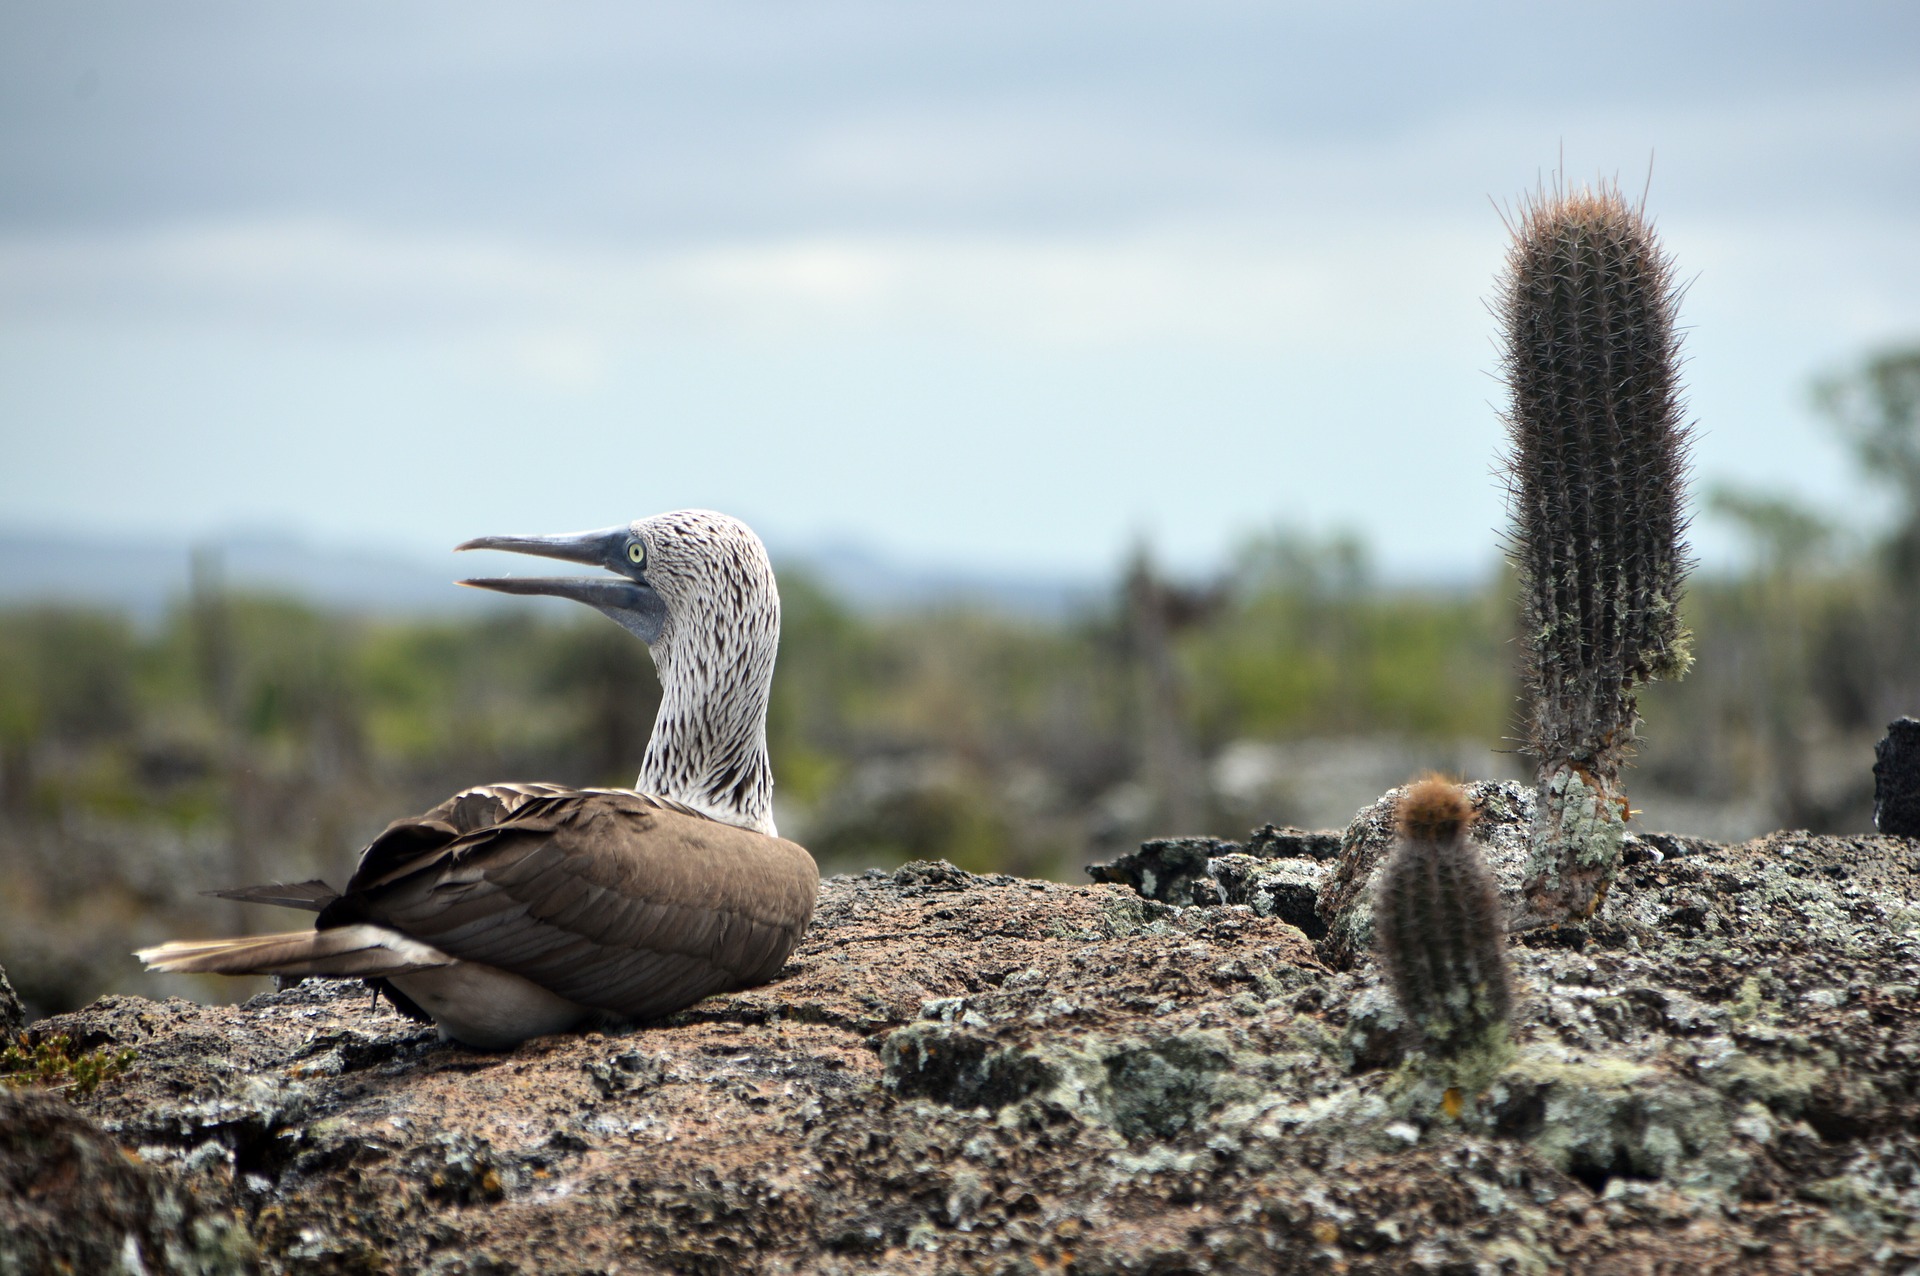 Galapagos bird with cactus